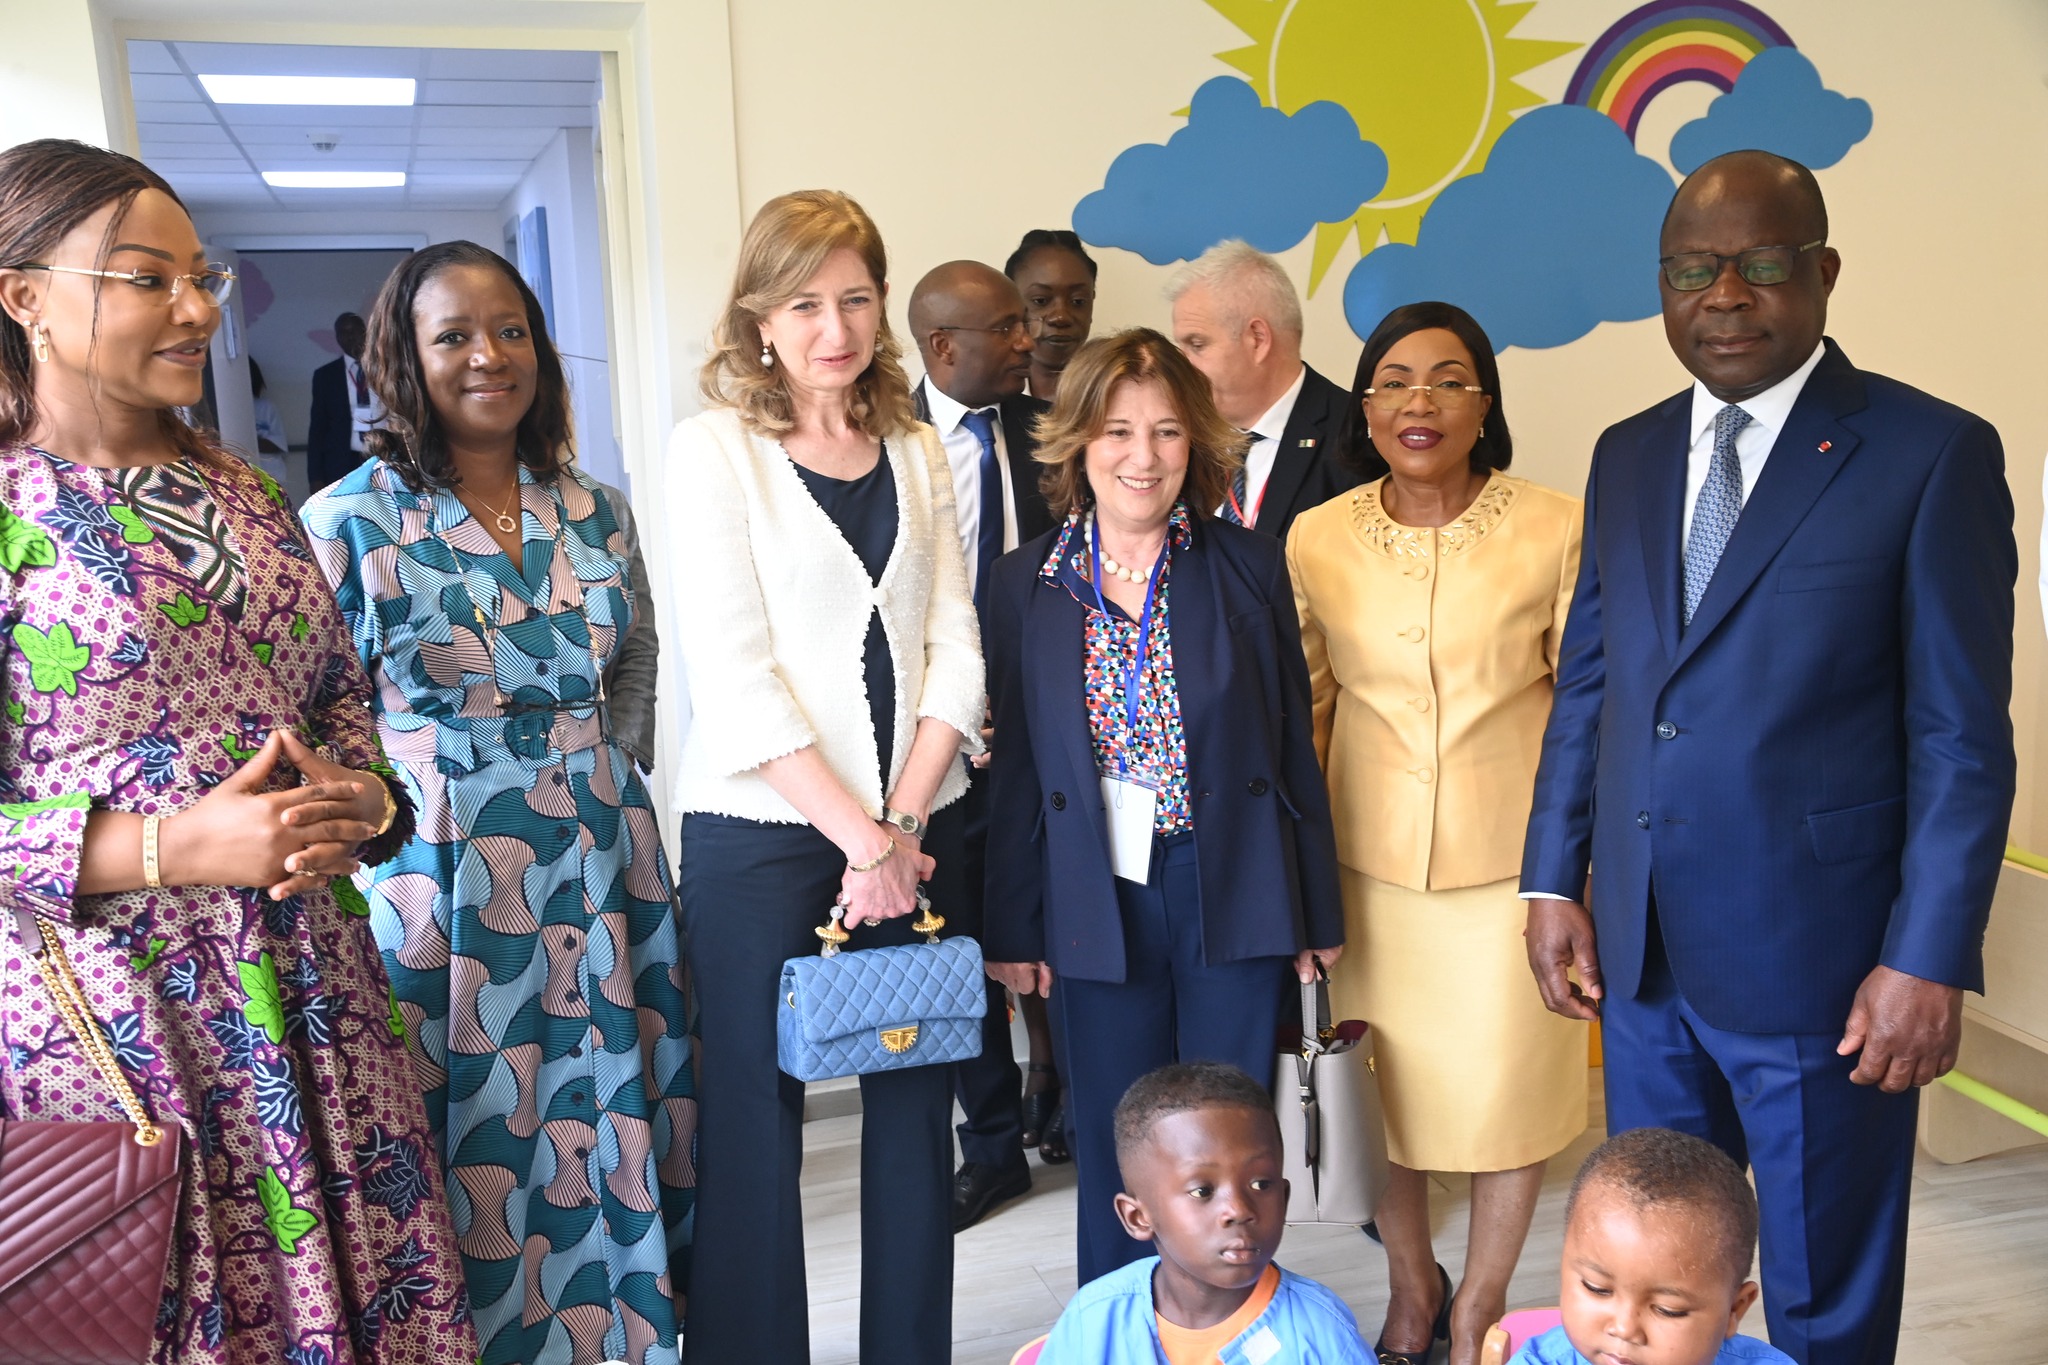 S.E.M. Sergio Matterella, Président de la République de l’Italie, a visité l’Hôpital Mère-Enfant Dominique Ouattara de Bingerville (PHOTOS)